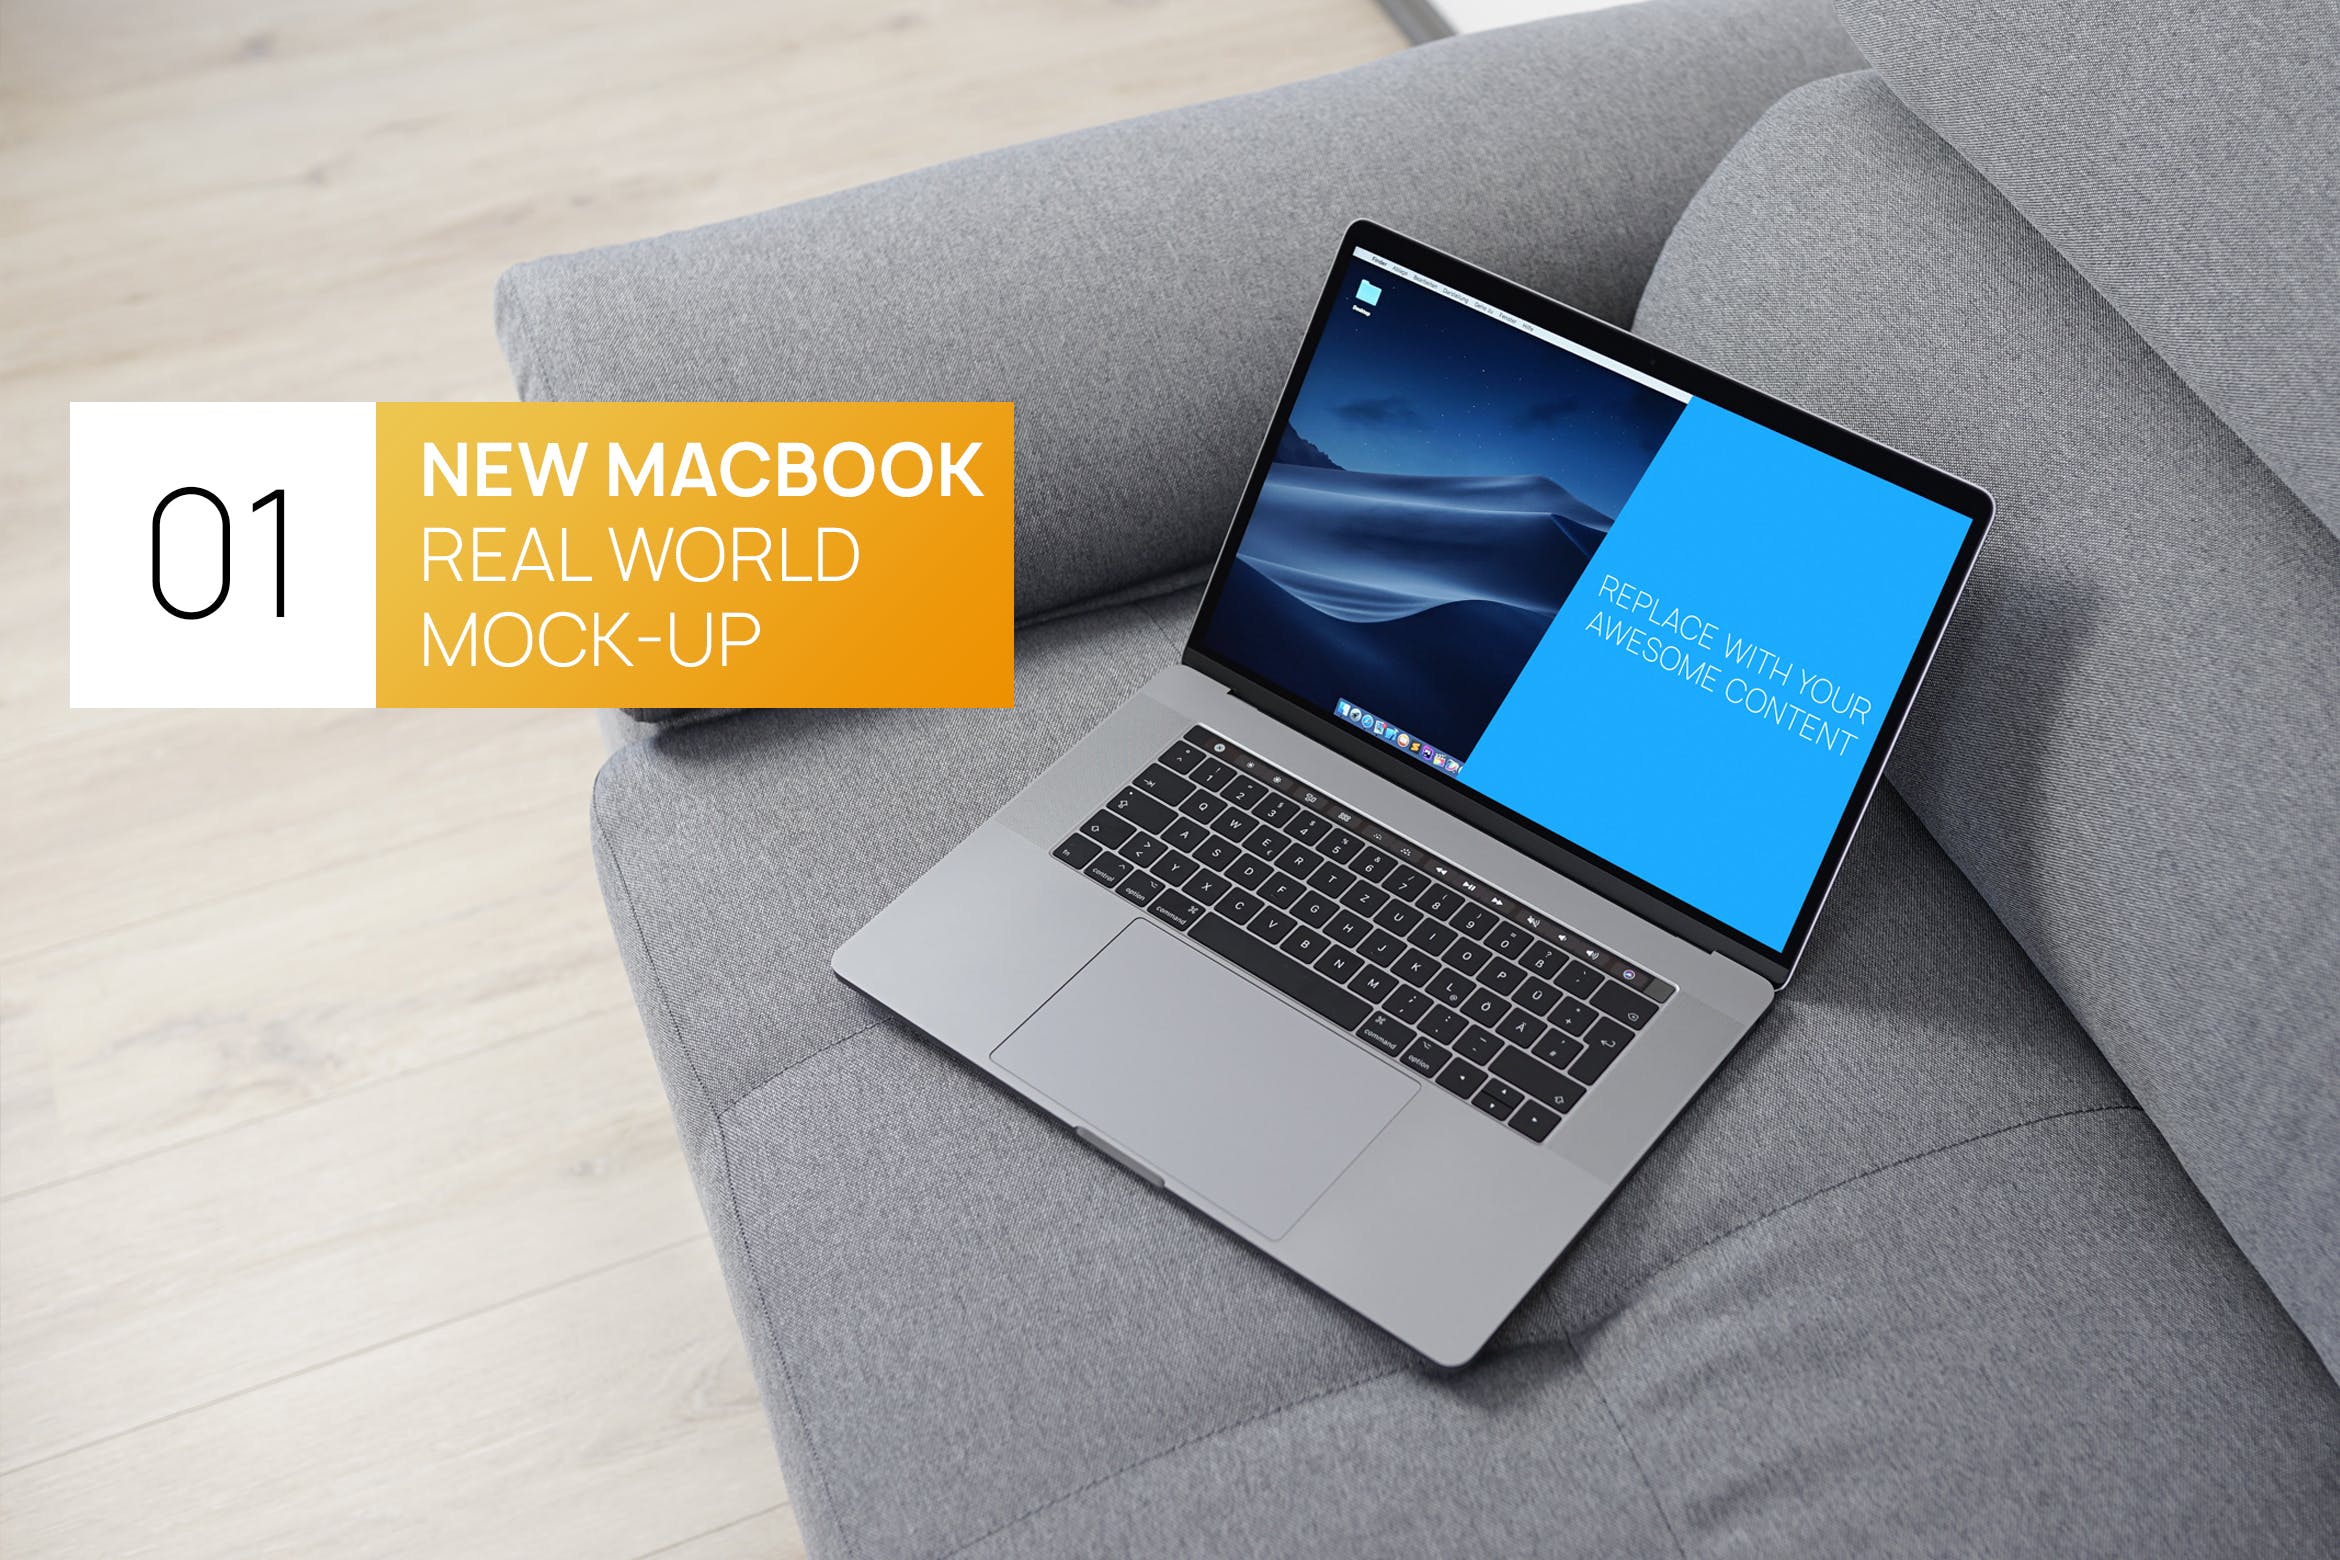 布艺沙发上的MacBook Pro电脑素材库精选样机 New MacBook Pro Touchbar Real World Mock-up插图